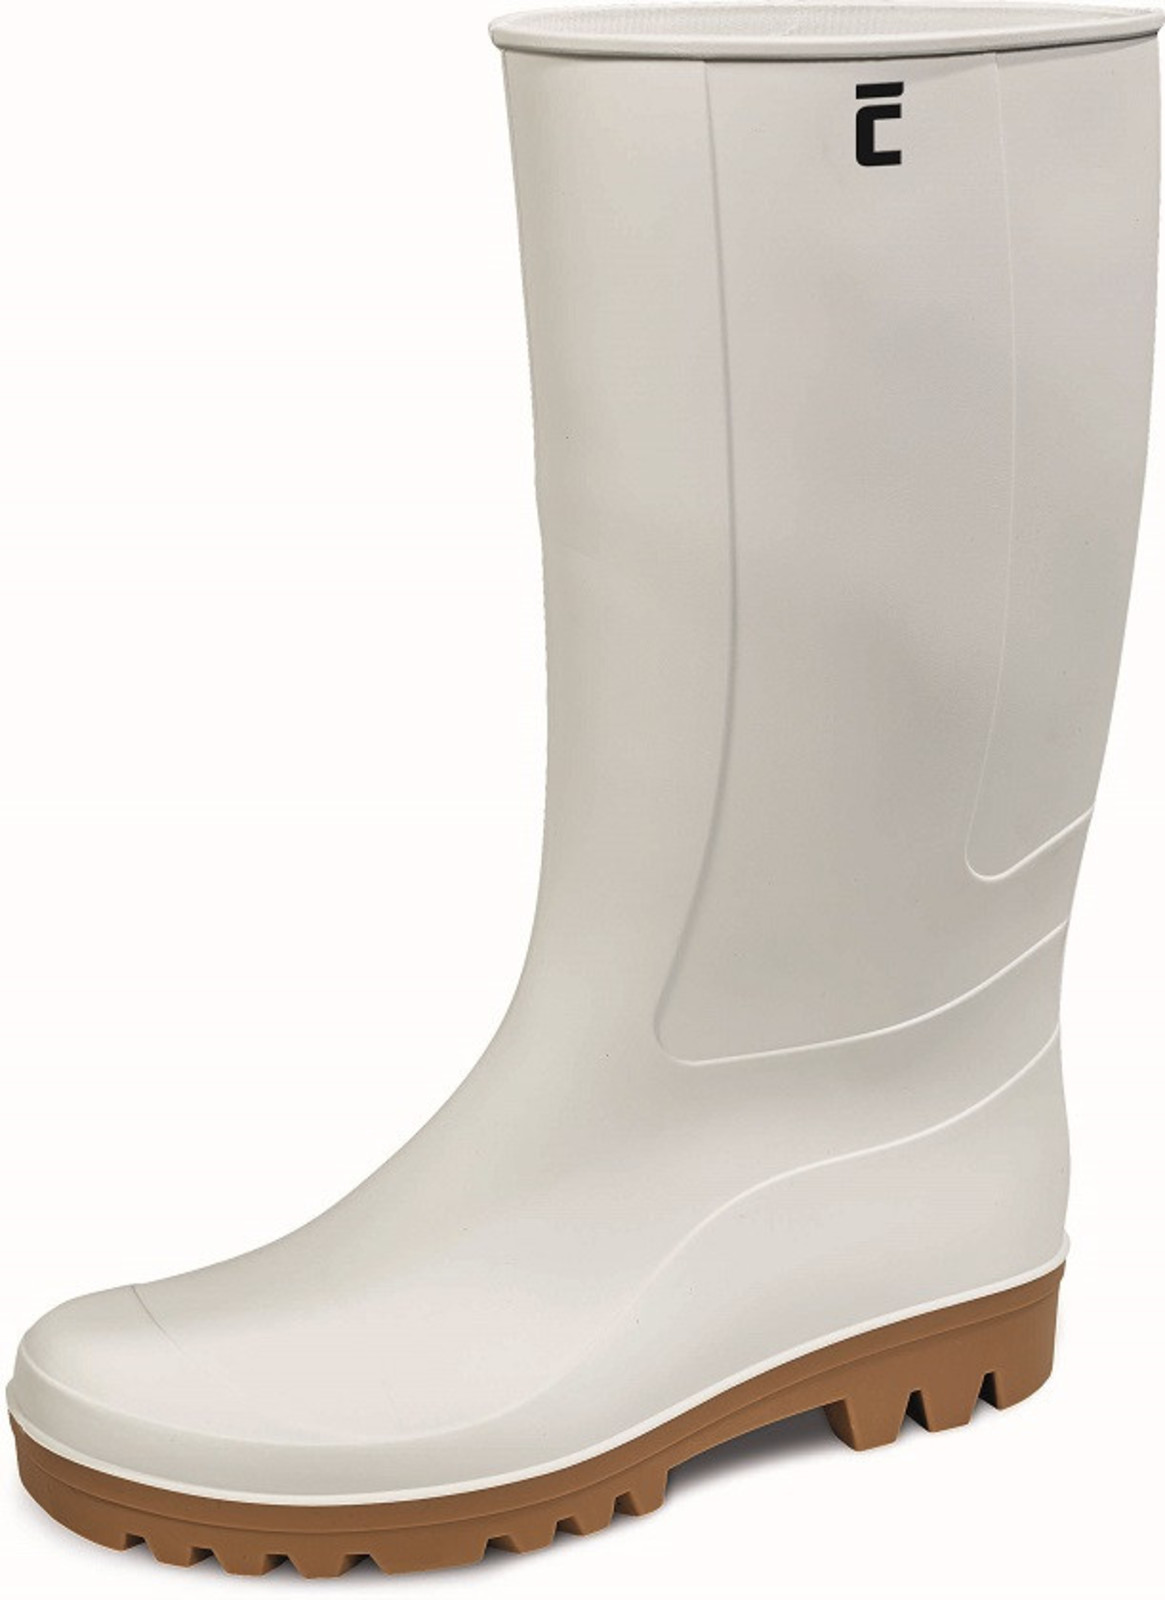 Gumáky Boots BC Food O4  - veľkosť: 43, farba: biela